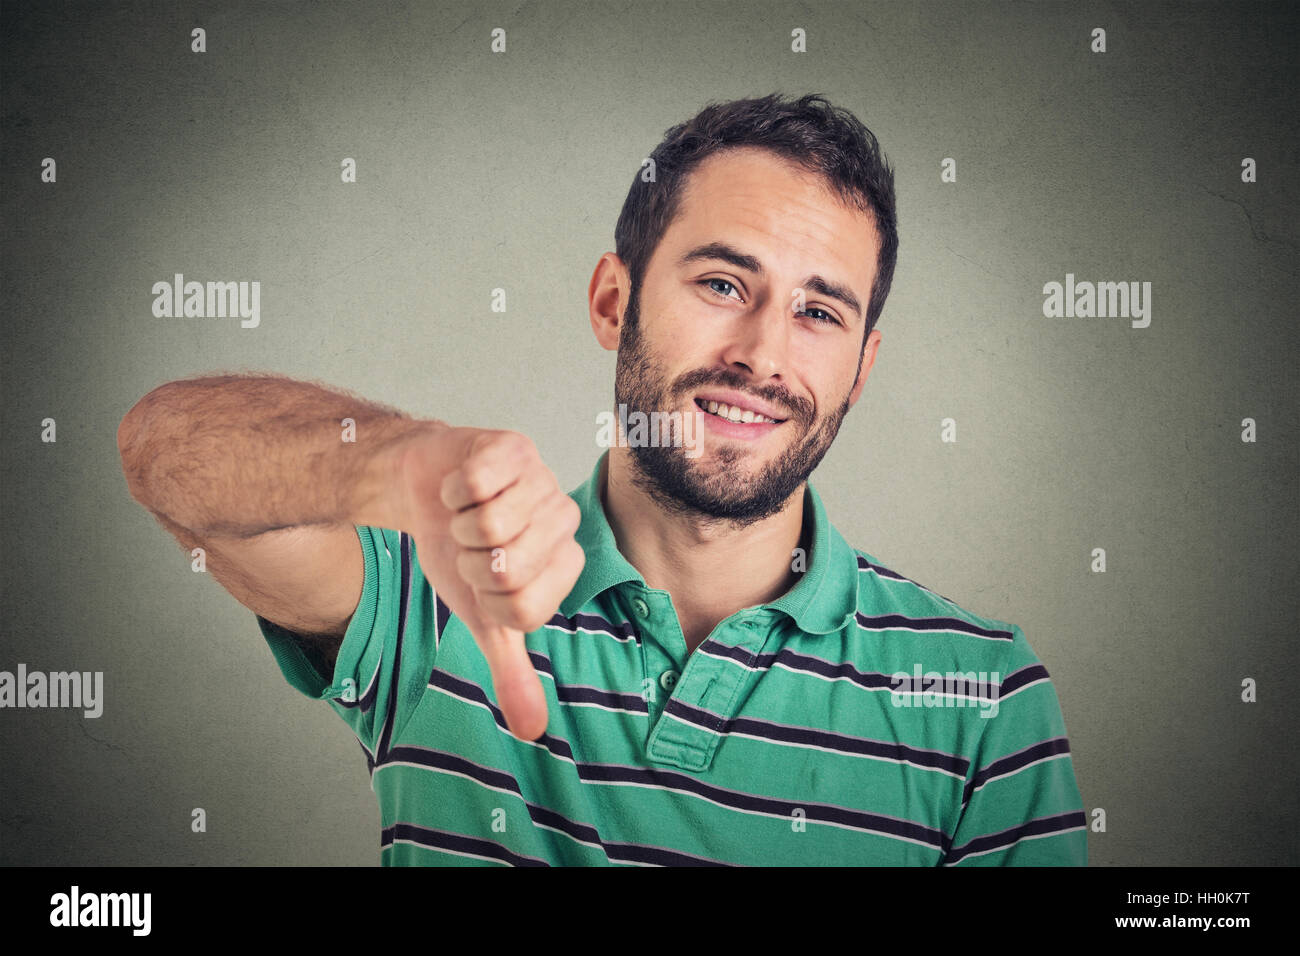 sarkastischer junger Mann mit Daumen runter Zeichen Handgeste, glücklich, jemand geirrt, verloren, konnte nicht isolierten auf grauen Hintergrund Stockfoto